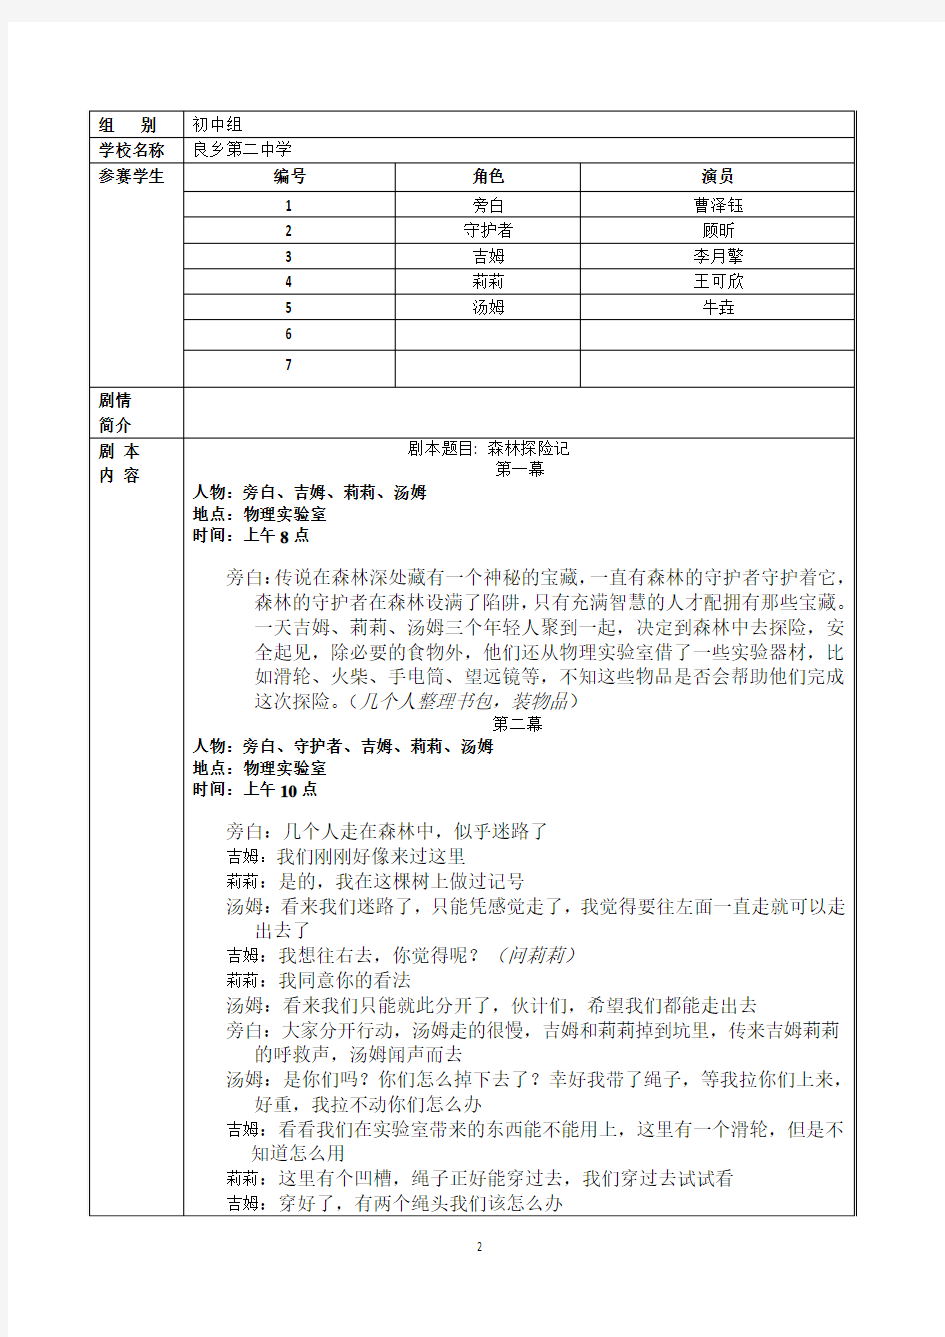 2013年剧本格式和内容中文